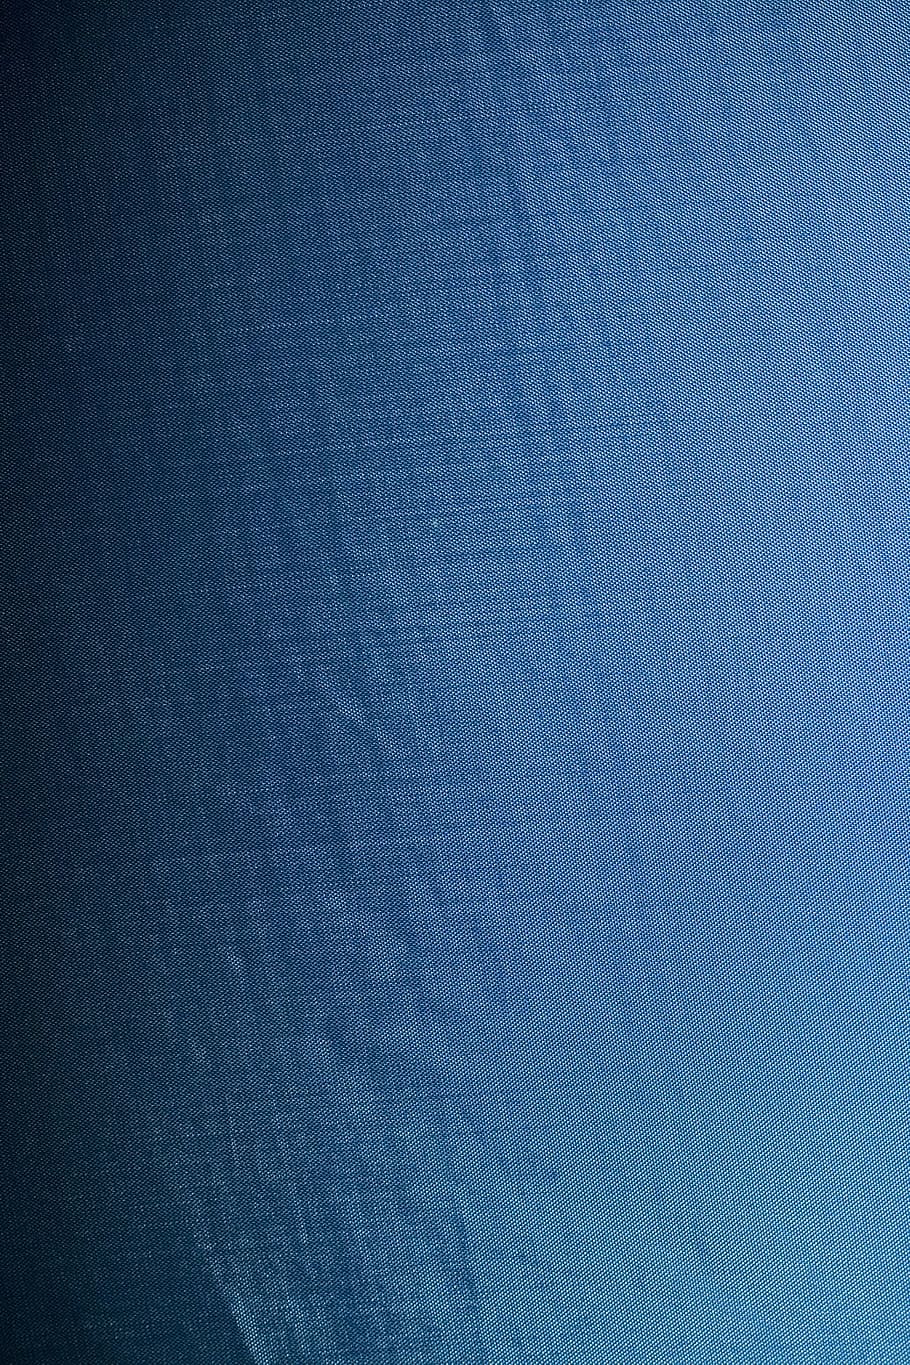 pano de fundo, fundos, em branco, azul, lona, ​​close-up, pano, vestuário, cor, algodão